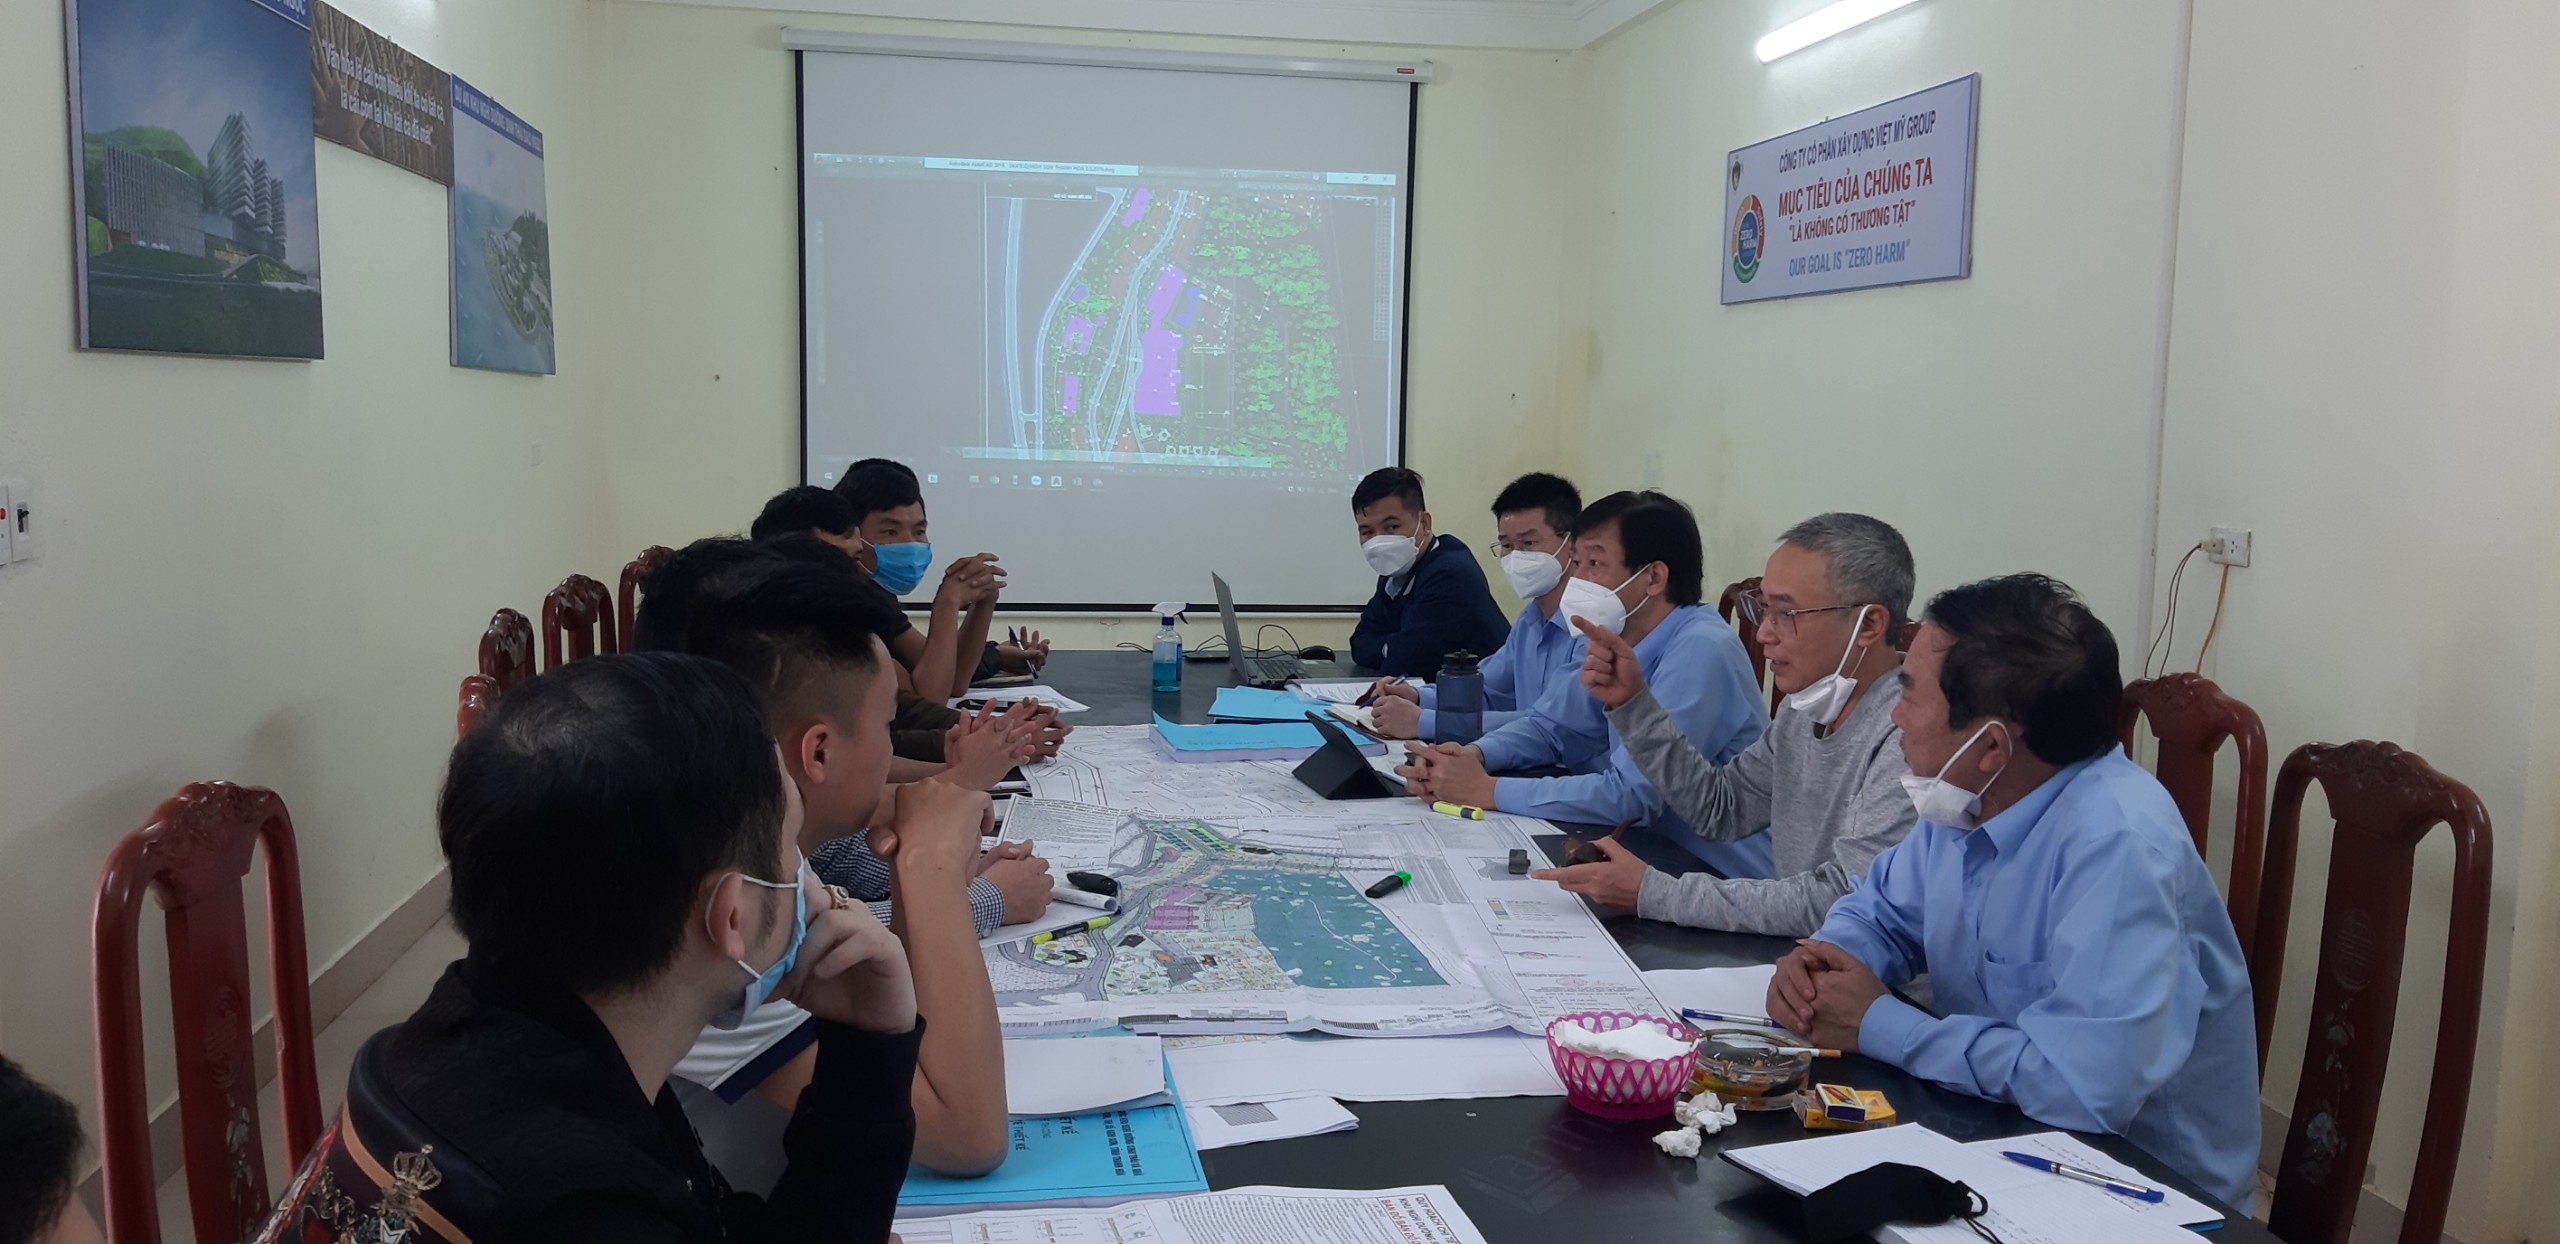 Chủ tịch Tập đoàn đi kiểm tra tiến độ dự án tại Khu kinh tế Nghi Sơn